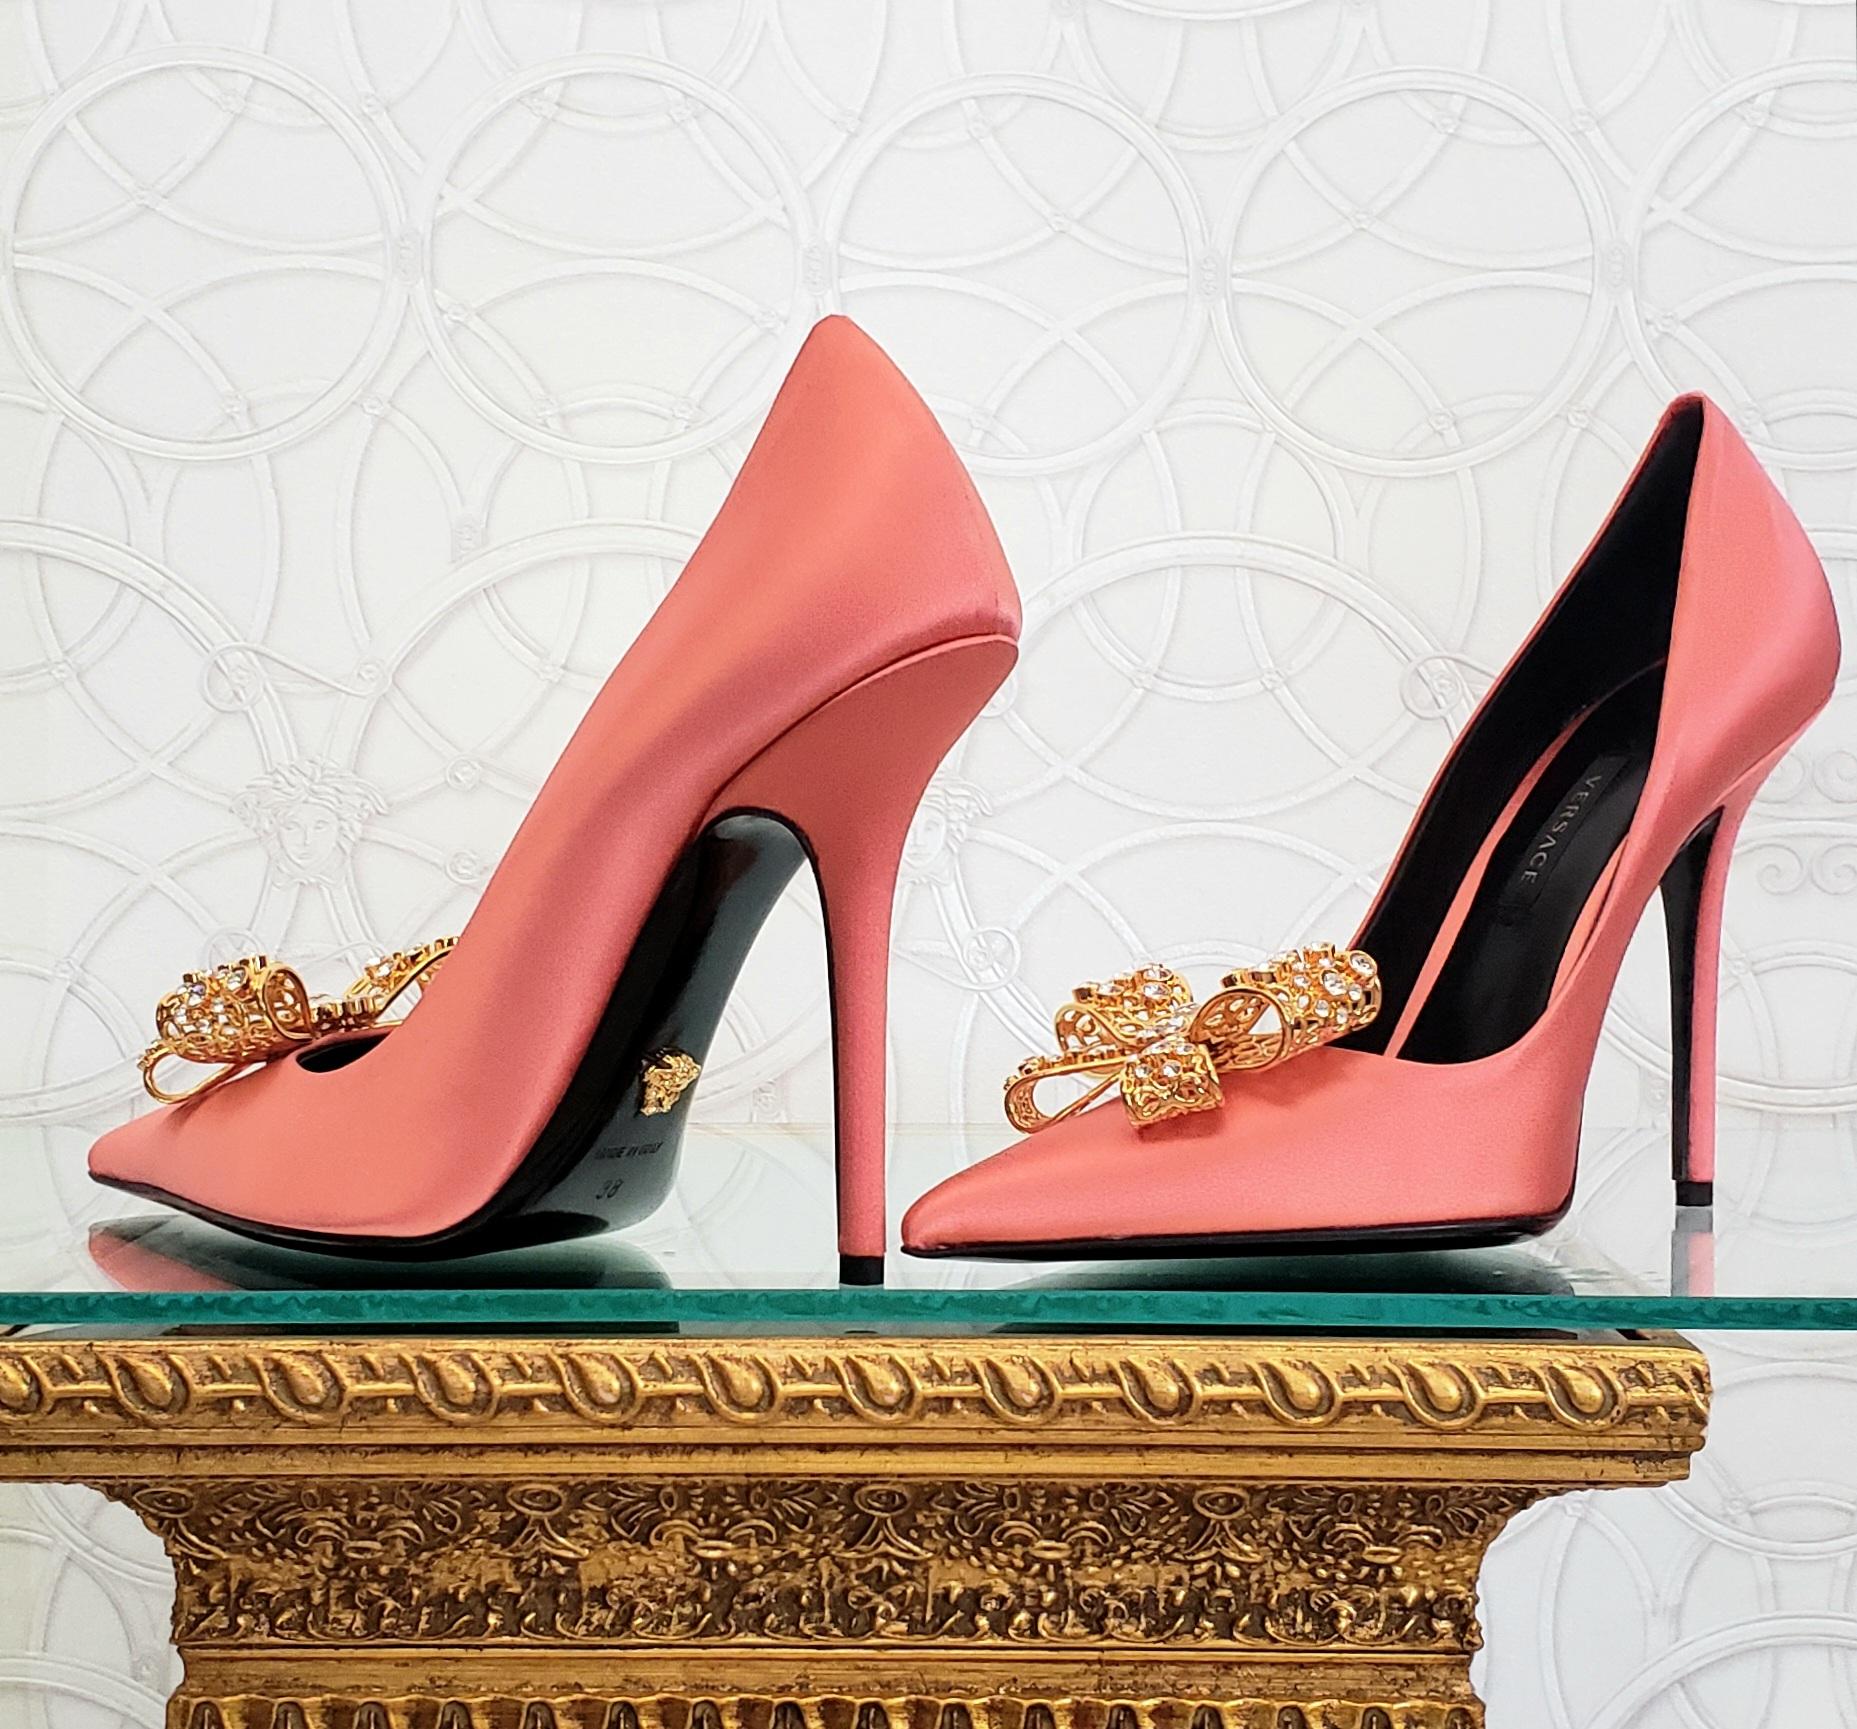 Or Chaussures de sport Versace 2019 ROSE SATIN ornées de cristaux dorés, taille 38 - 8 en vente